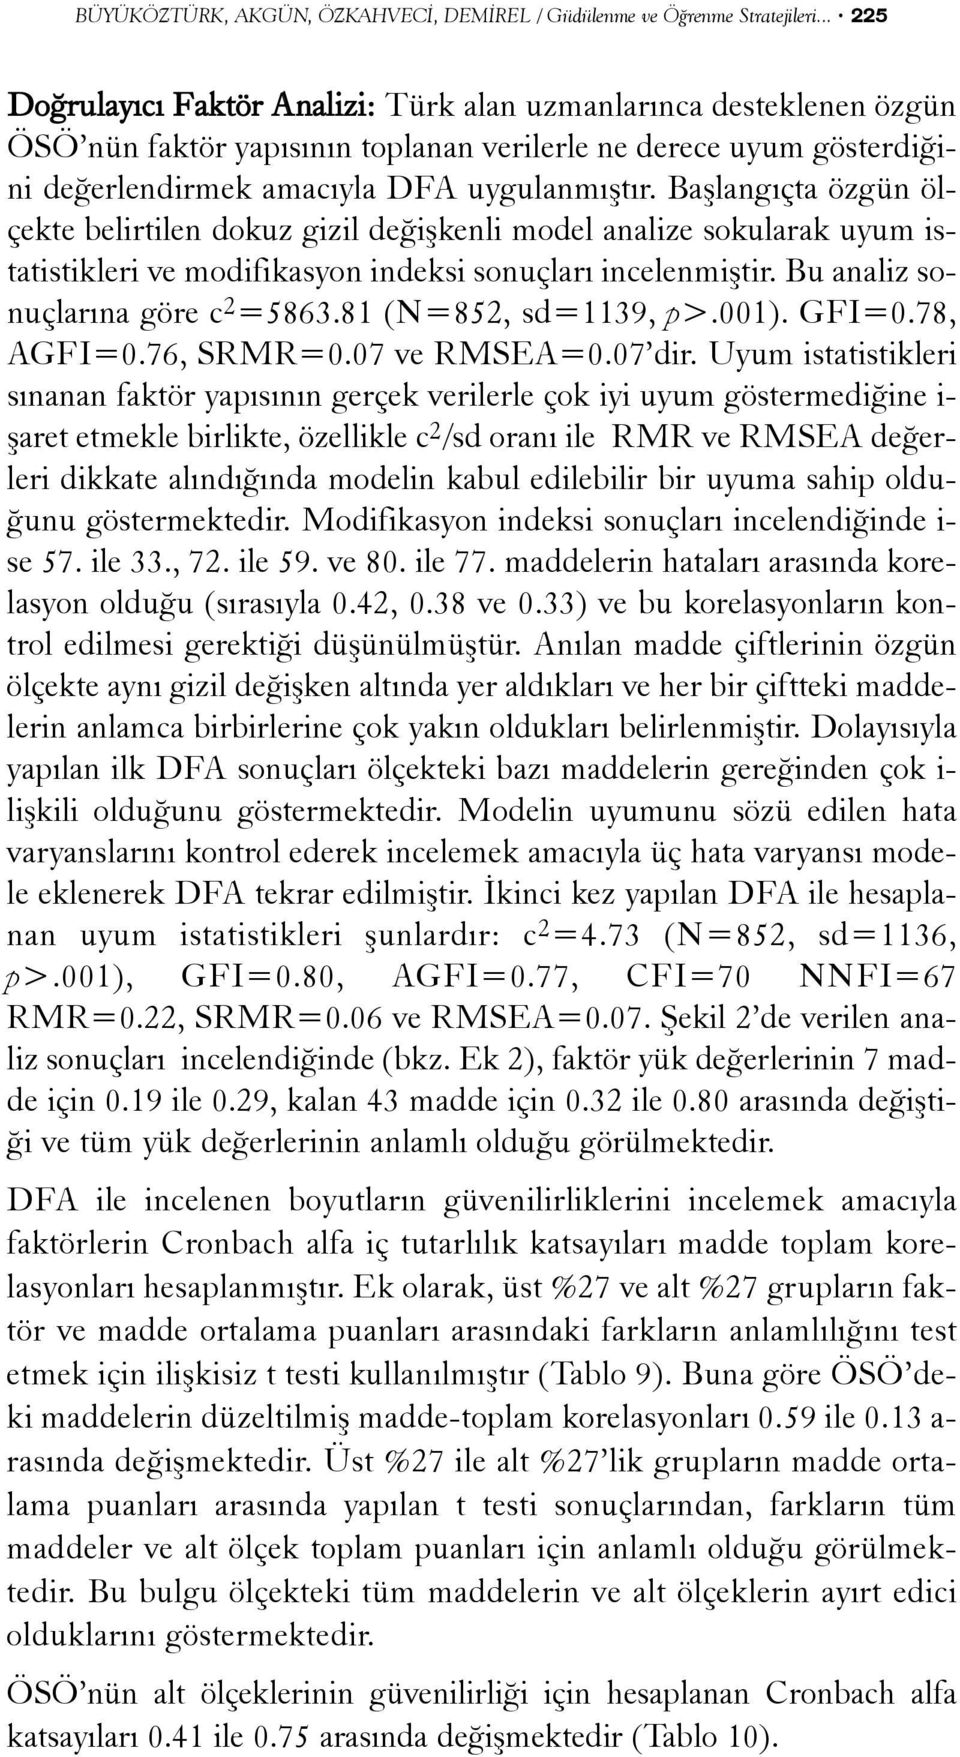 Baþlangýçta özgün ölçekte belirtilen dokuz gizil deðiþkenli model analize sokularak uyum istatistikleri ve modifikasyon indeksi sonuçlarý incelenmiþtir. Bu analiz sonuçlarýna göre c 2 =5863.